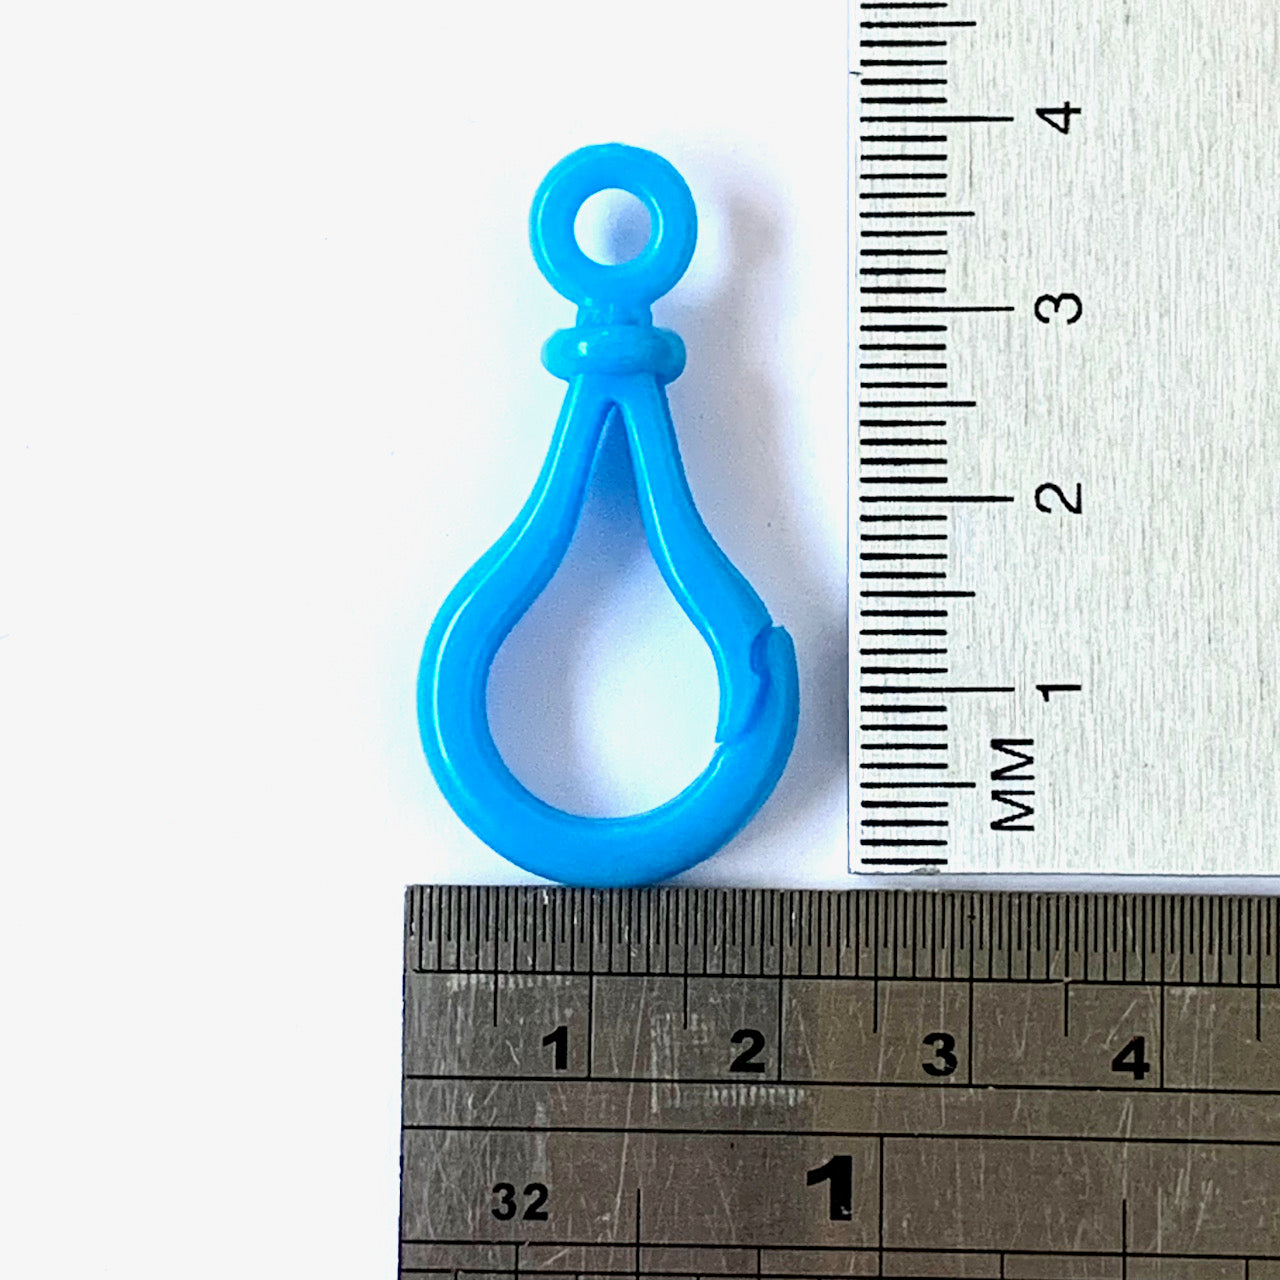 Small Key Rings - 40mm by 20mm  - EN71, REACH & Annex II Compliant